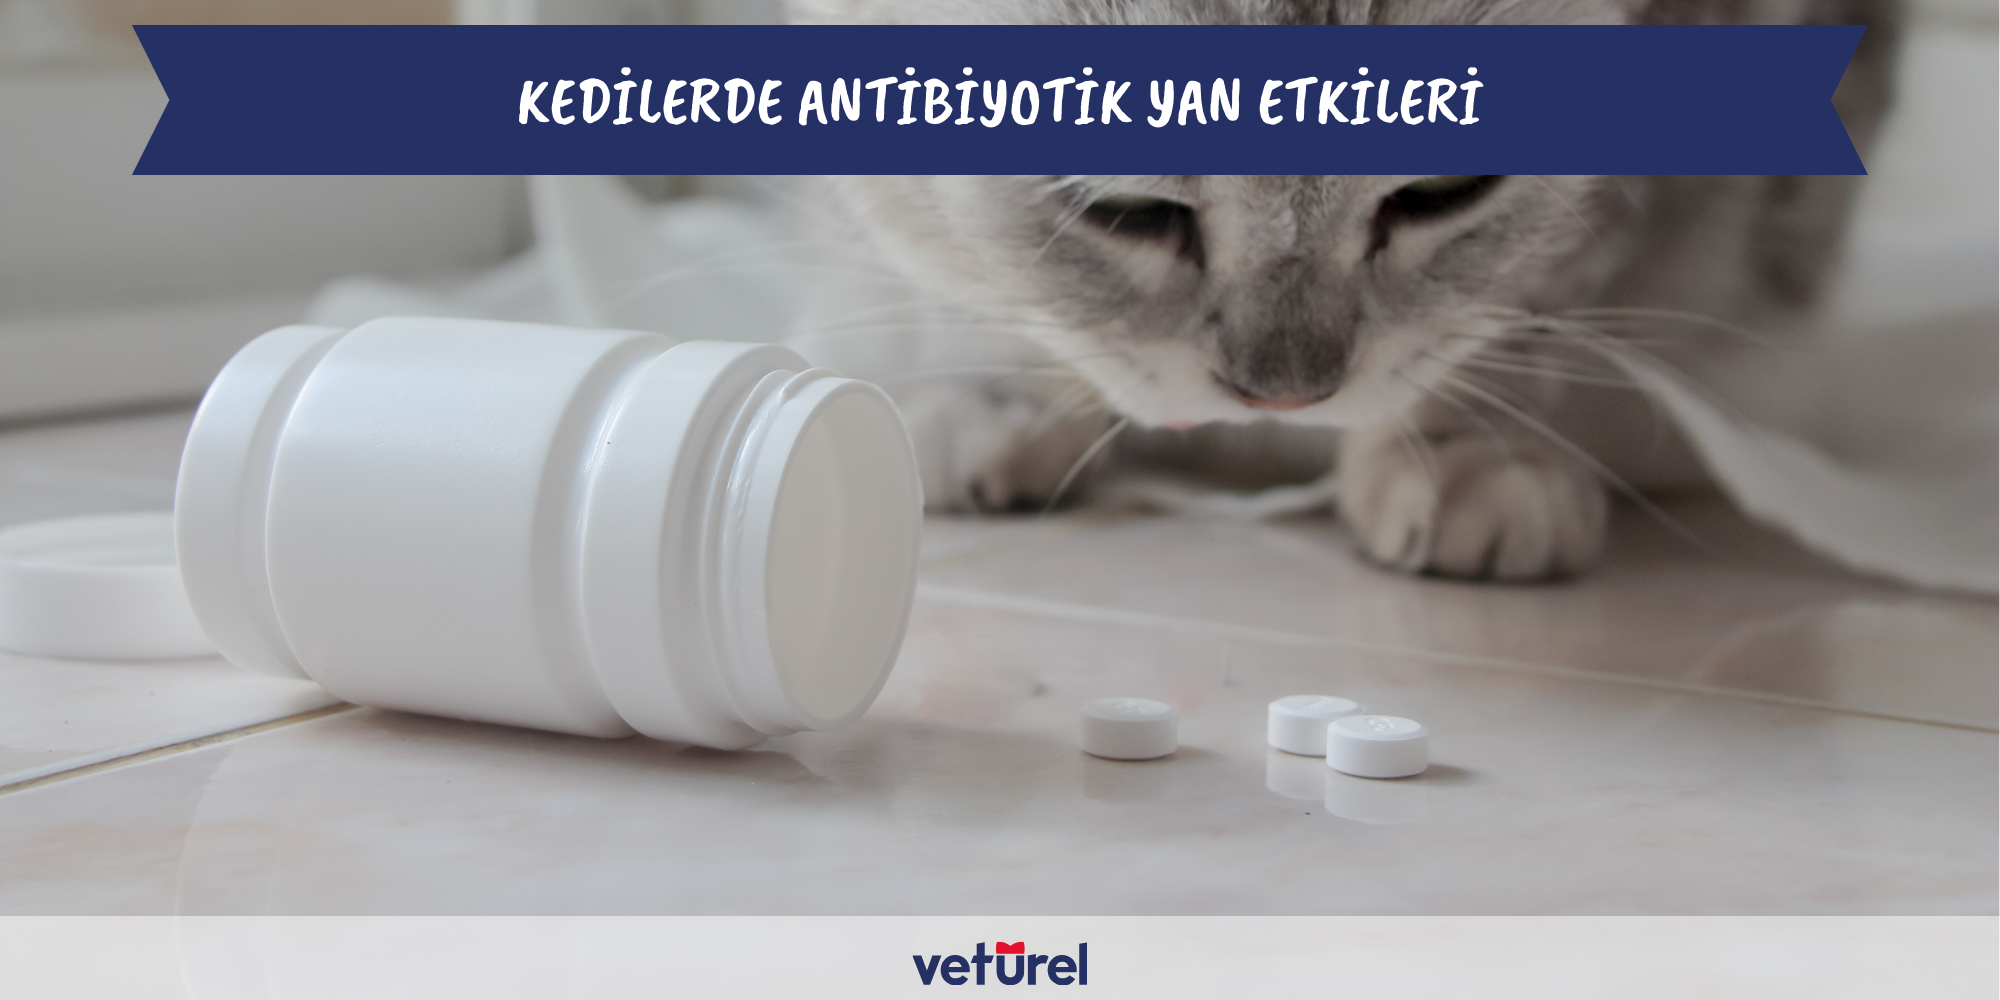 kedilerde antibiyotik yan etkileri